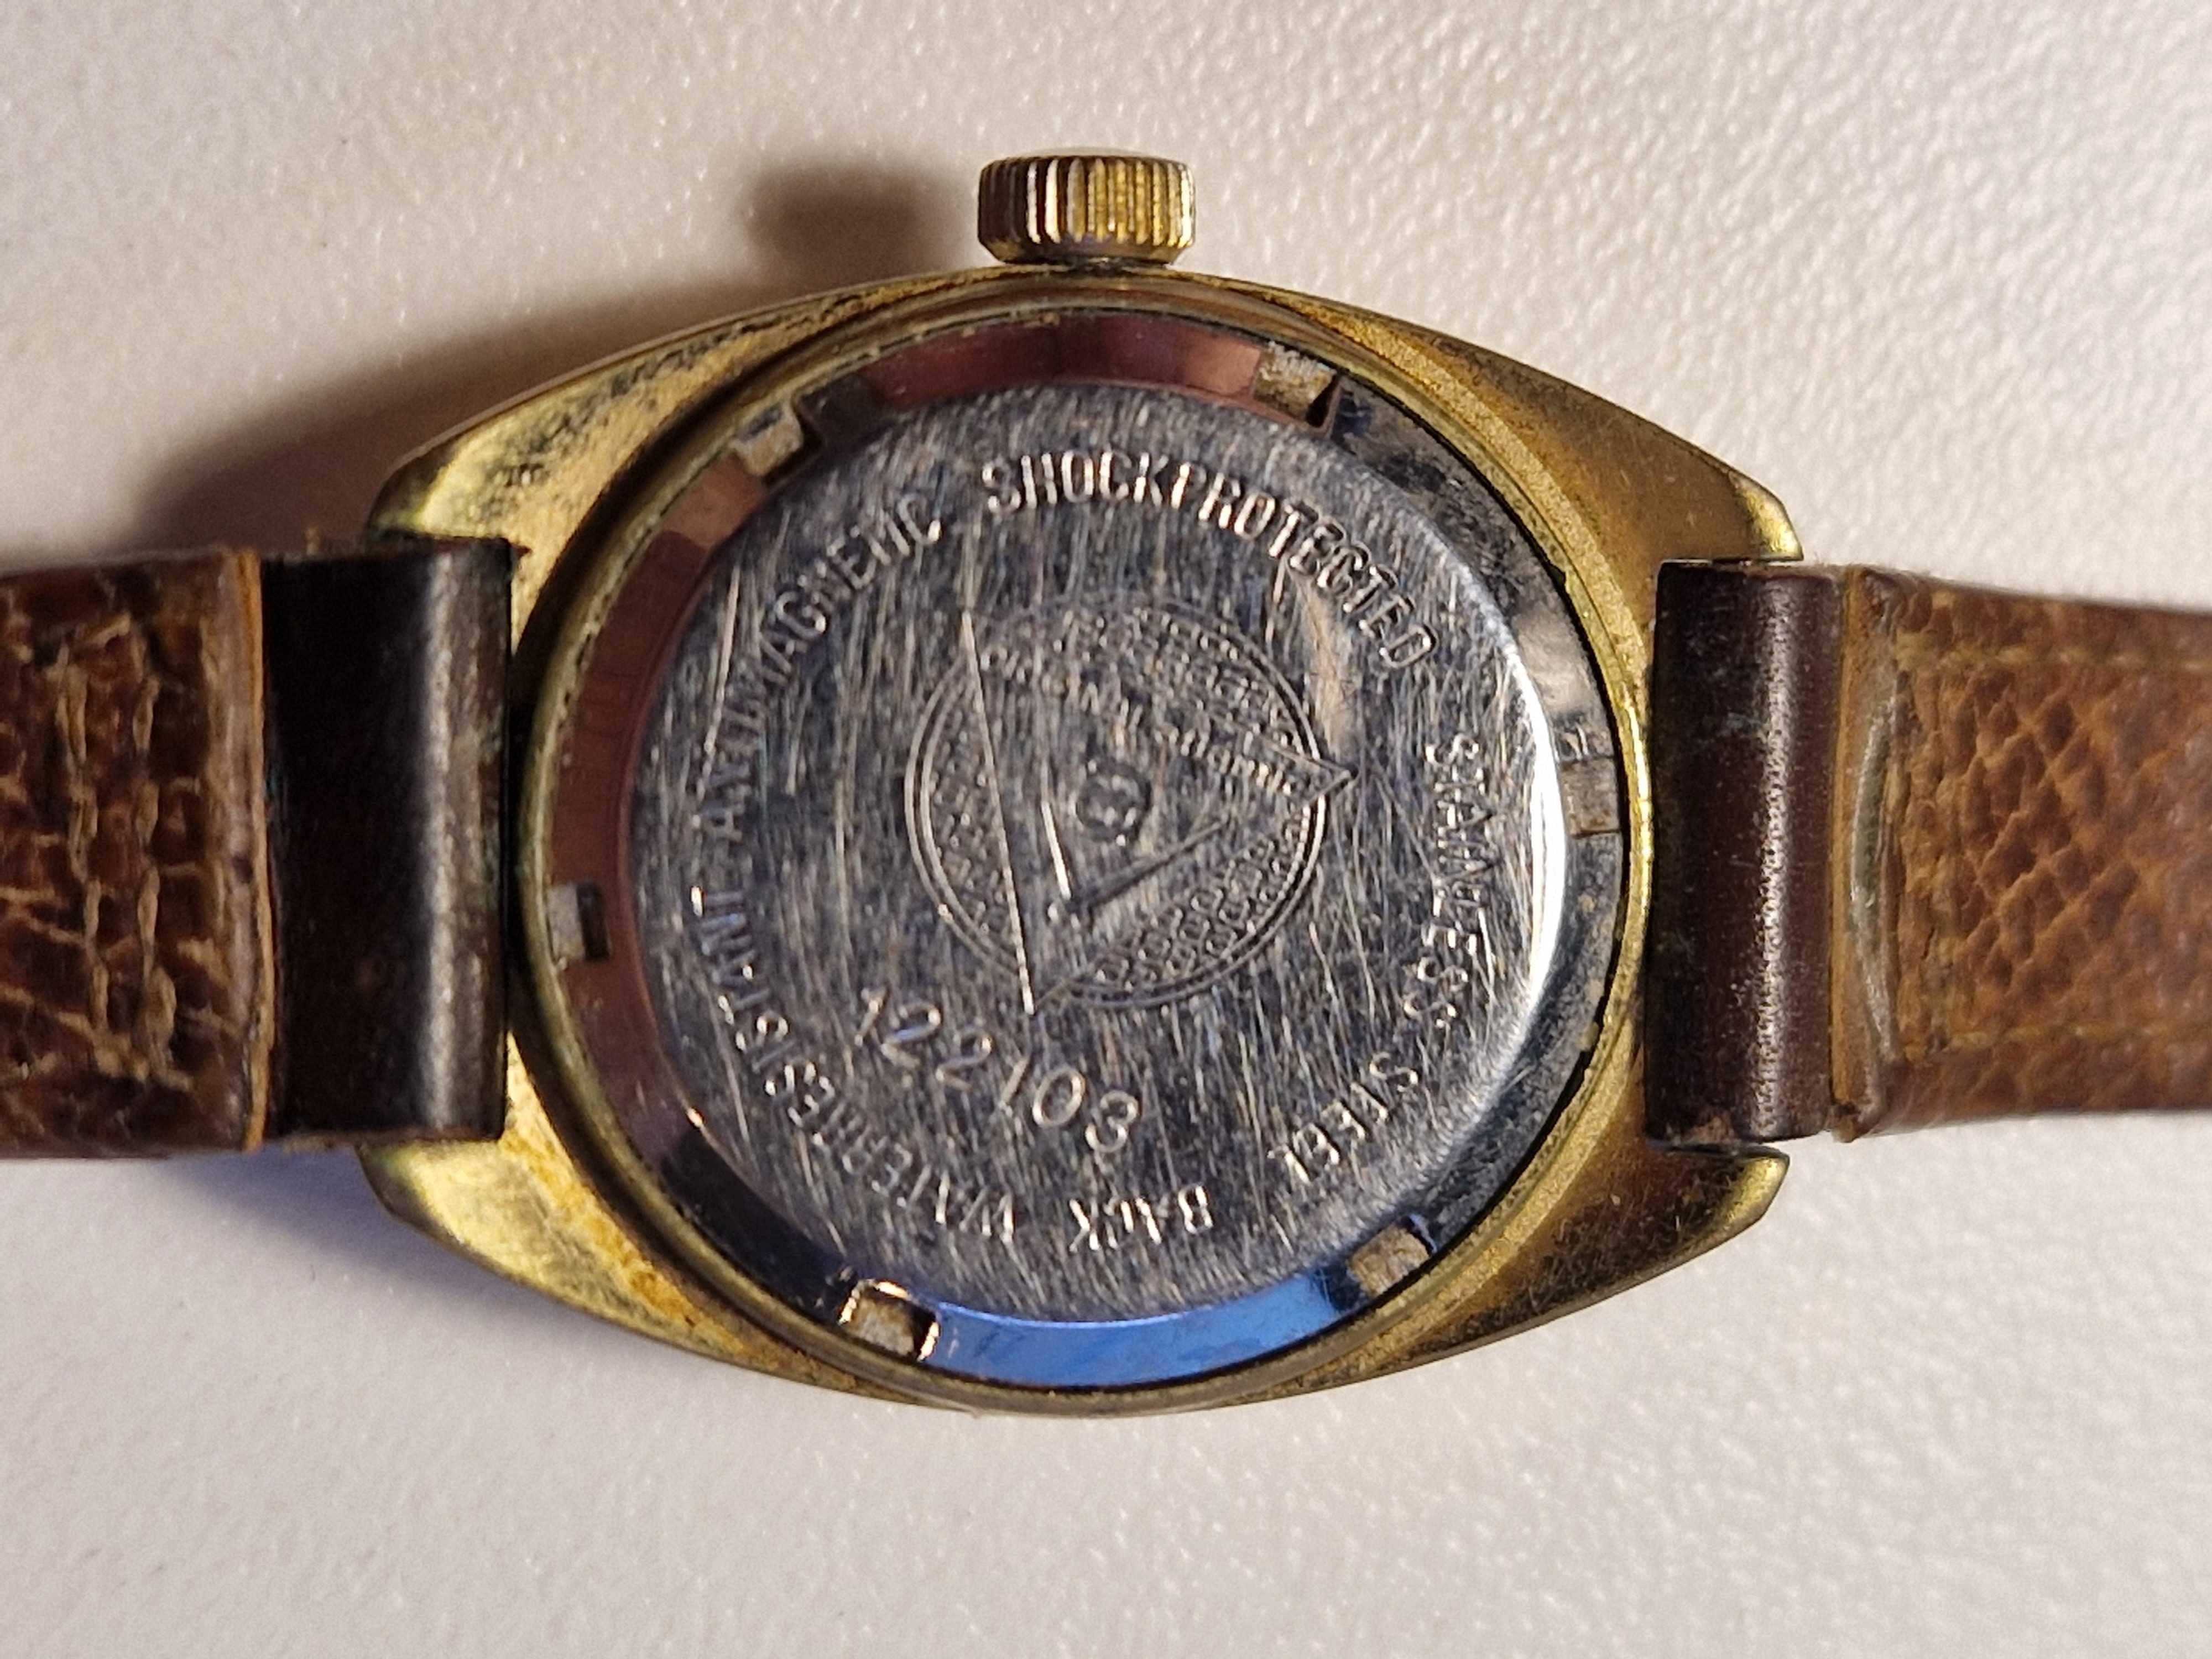 Zegarek Atlantic damski 3419 z lat 50-tych XX wieku